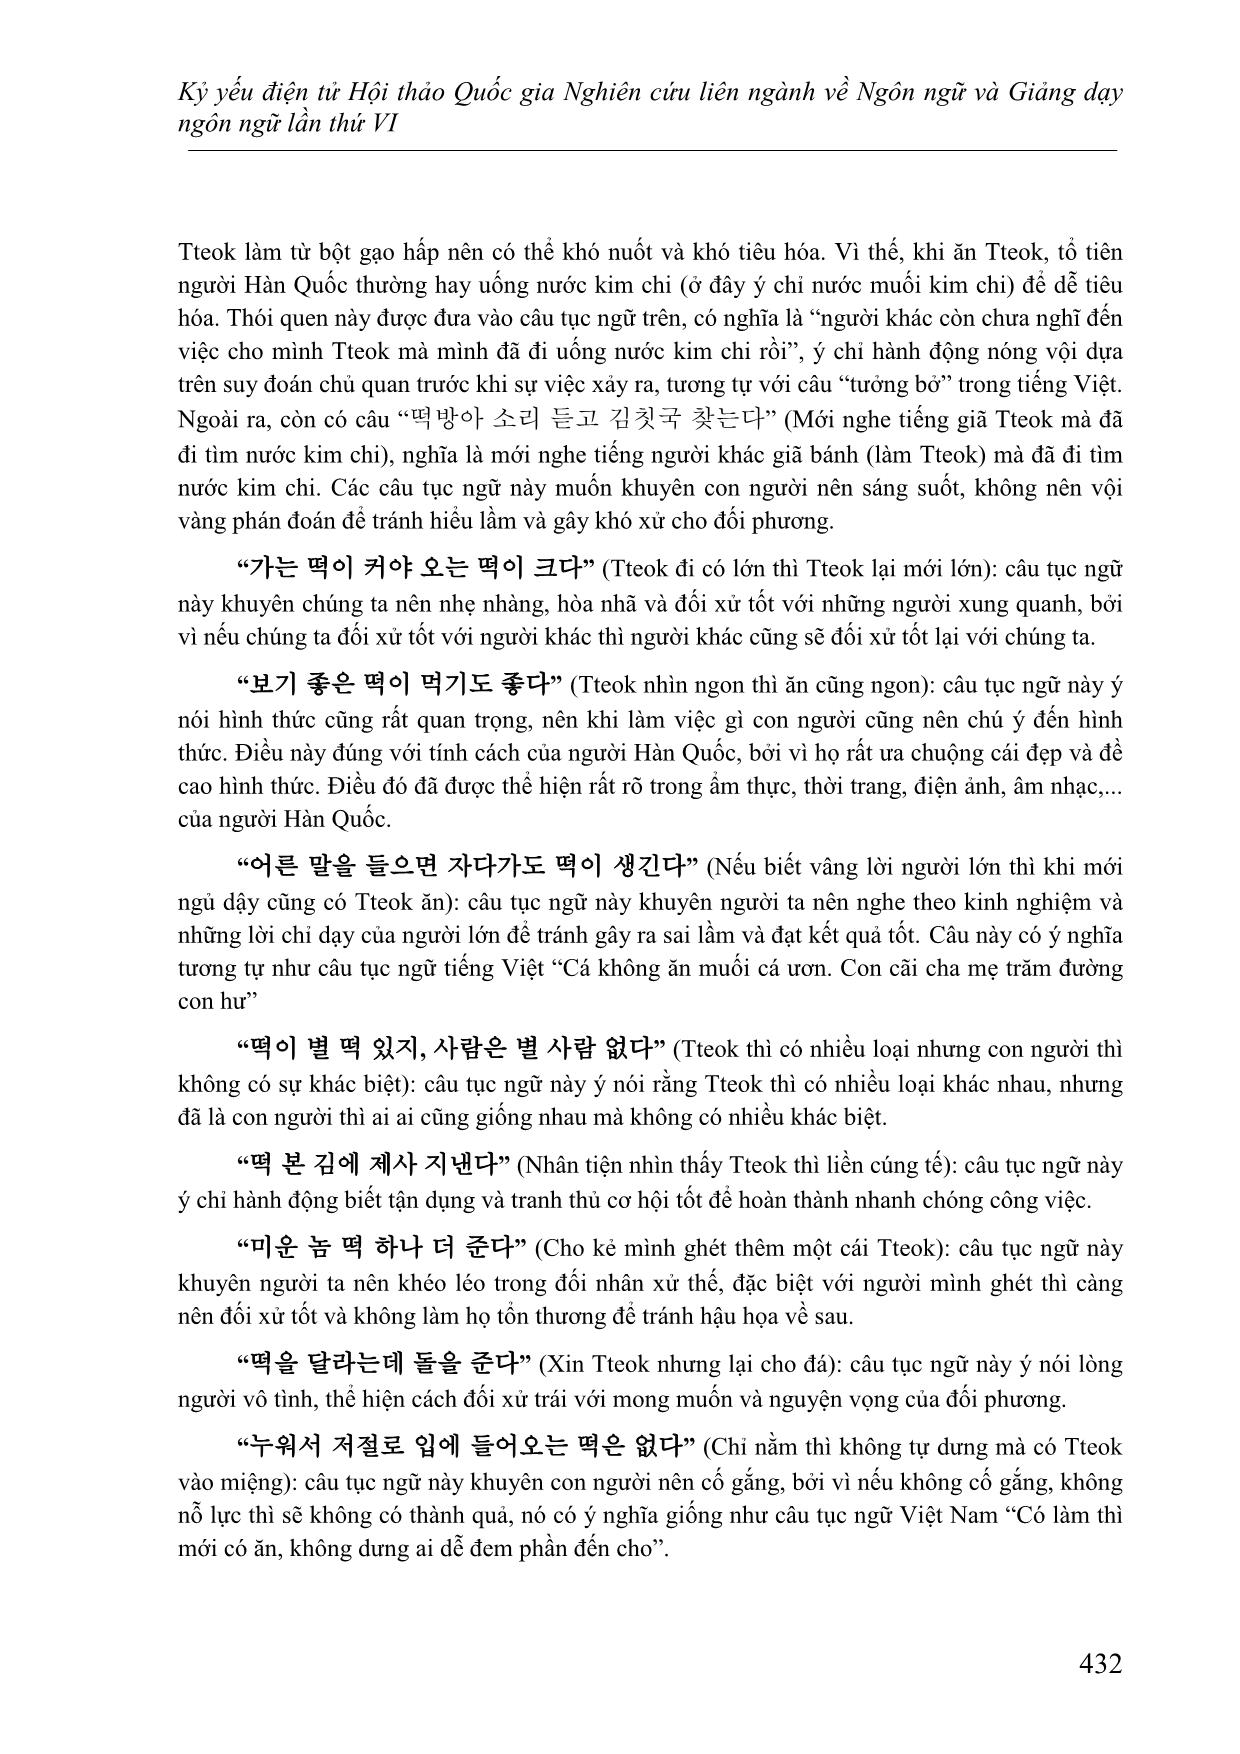 Đặc điểm ngôn ngữ và văn hóa Hàn Quốc được biểu hiện qua yếu tố “tteok” trong quán dụng ngữ và tục ngữ tiếng Hàn trang 7